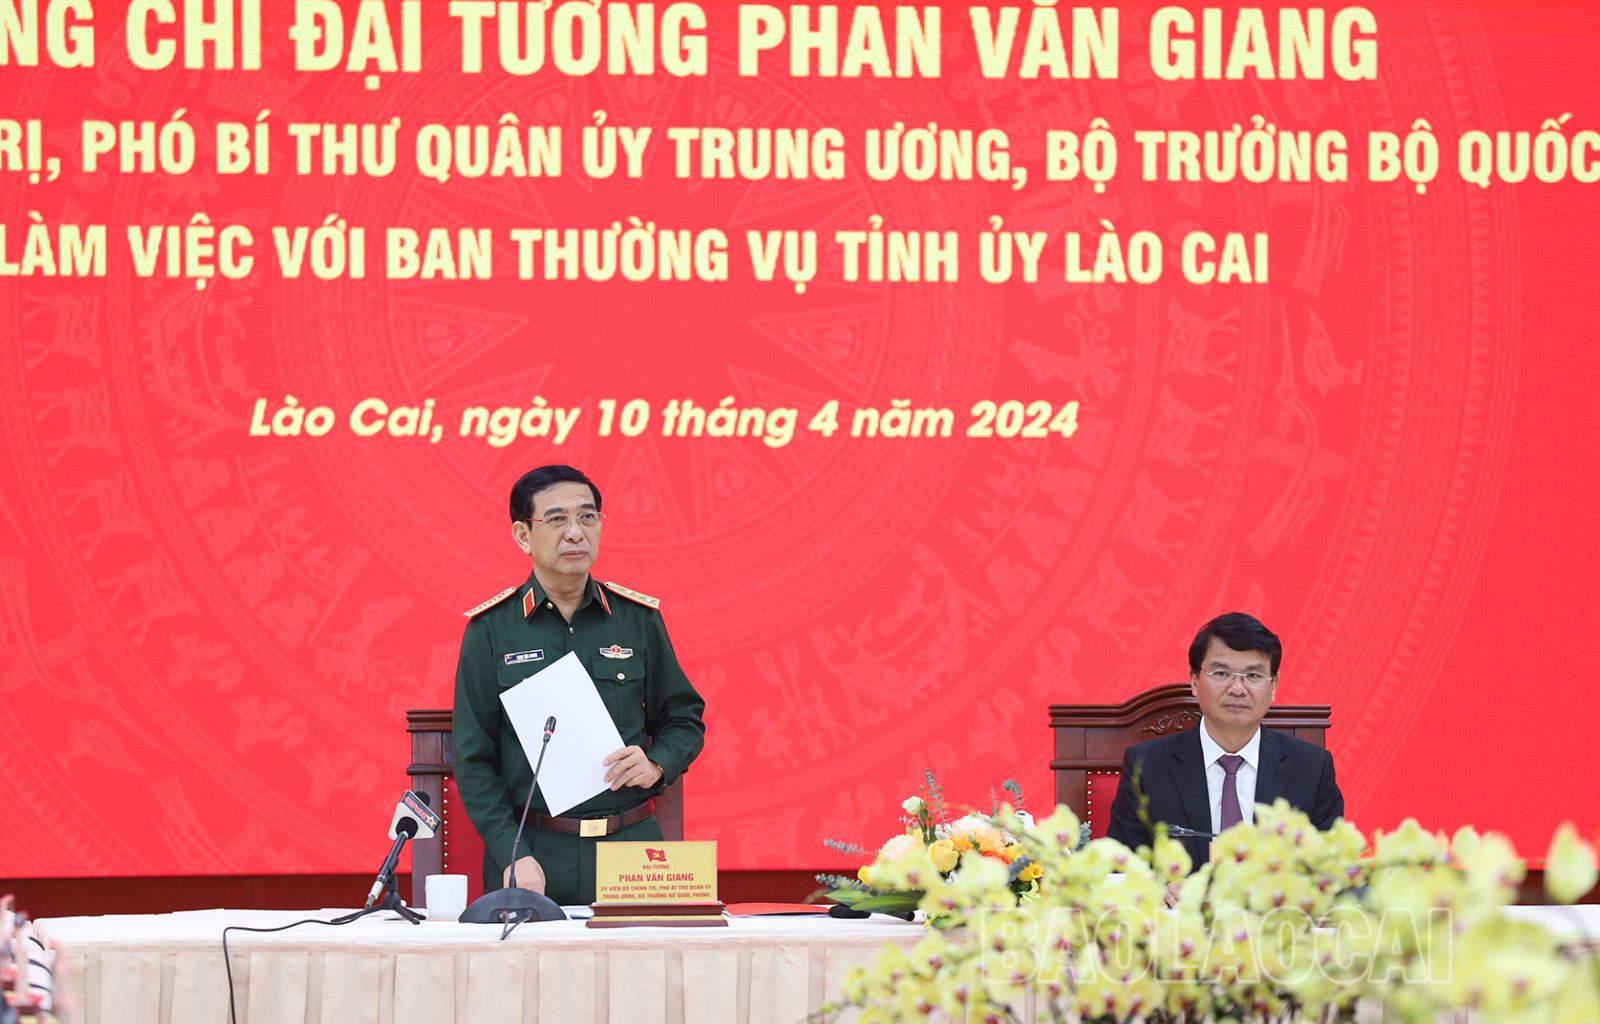 Đại tướng Phan Văn Giang, Bộ trưởng Bộ Quốc phòng phát biểu tại buổi làm việc (2).JPG